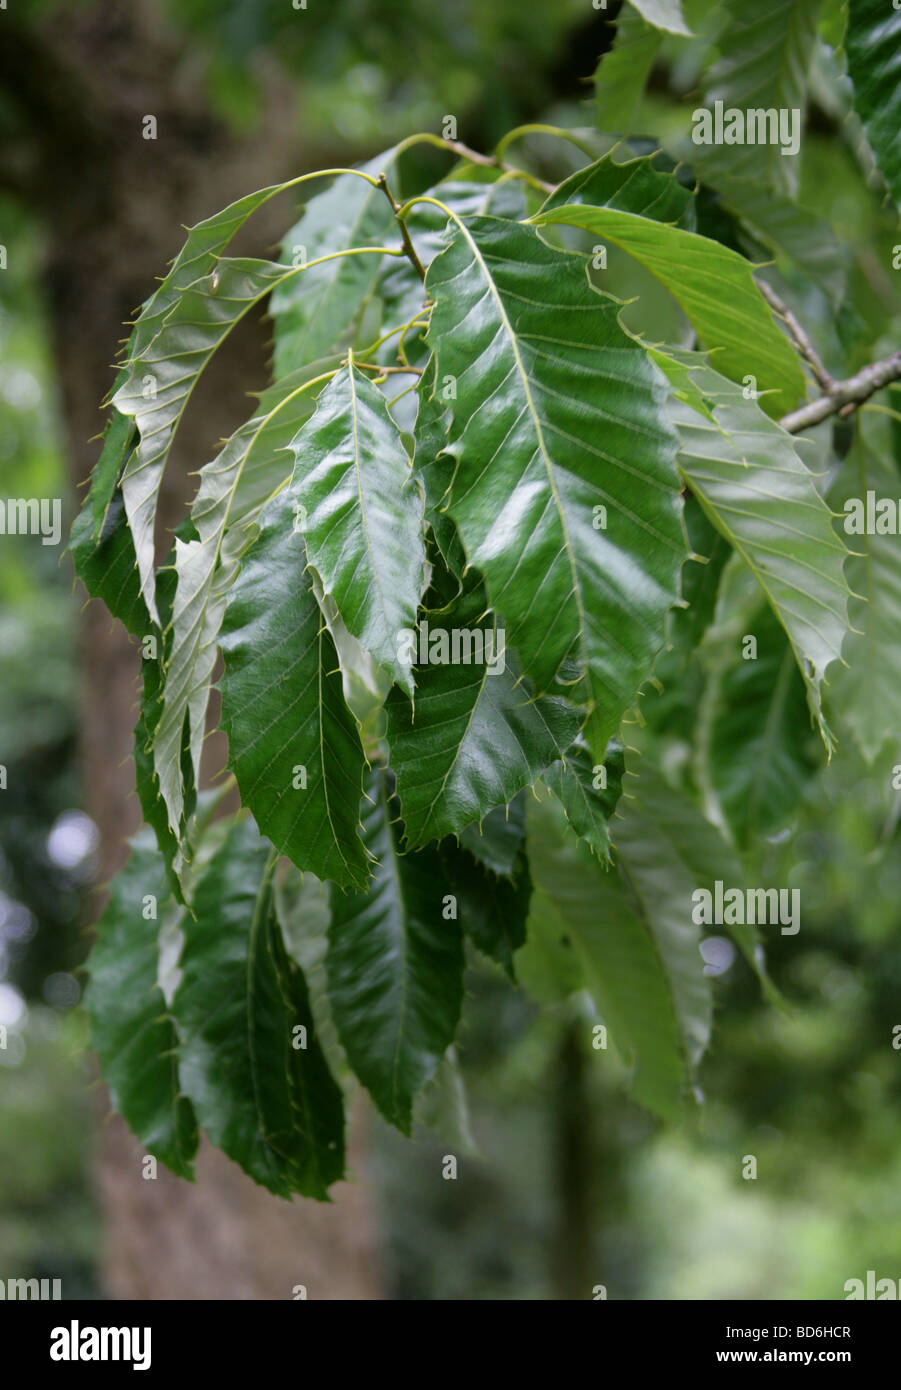 Chinois Oriental ou les feuilles des arbres de chêne-liège, Quercus variabilis, Fagaceae, Chine, Japon Banque D'Images